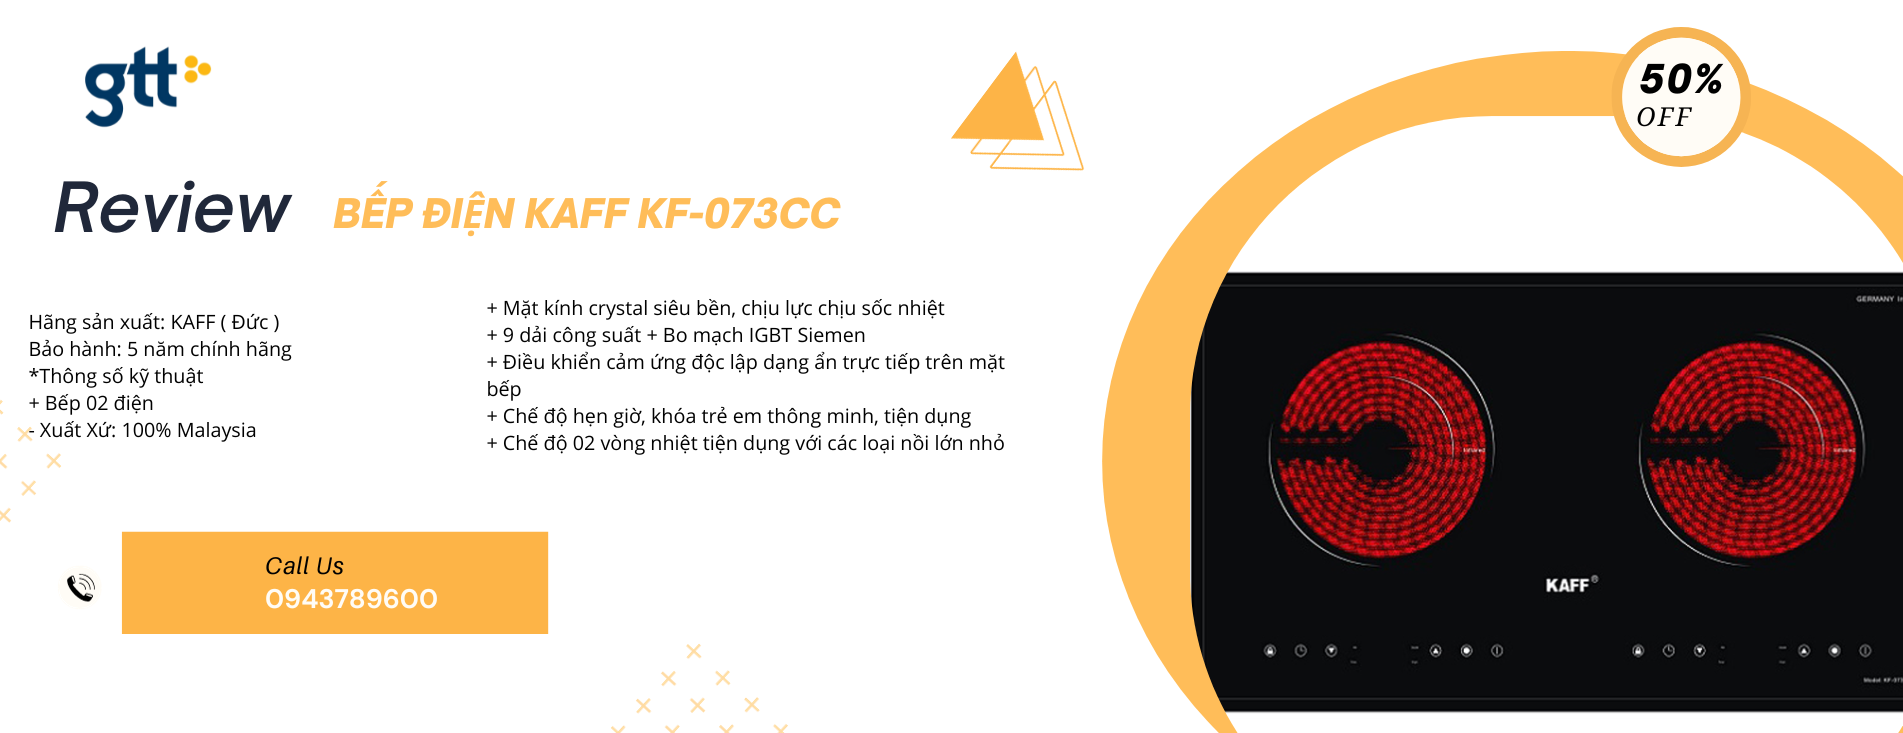 REVIEW: Bếp Điện Kaff KF-073CC